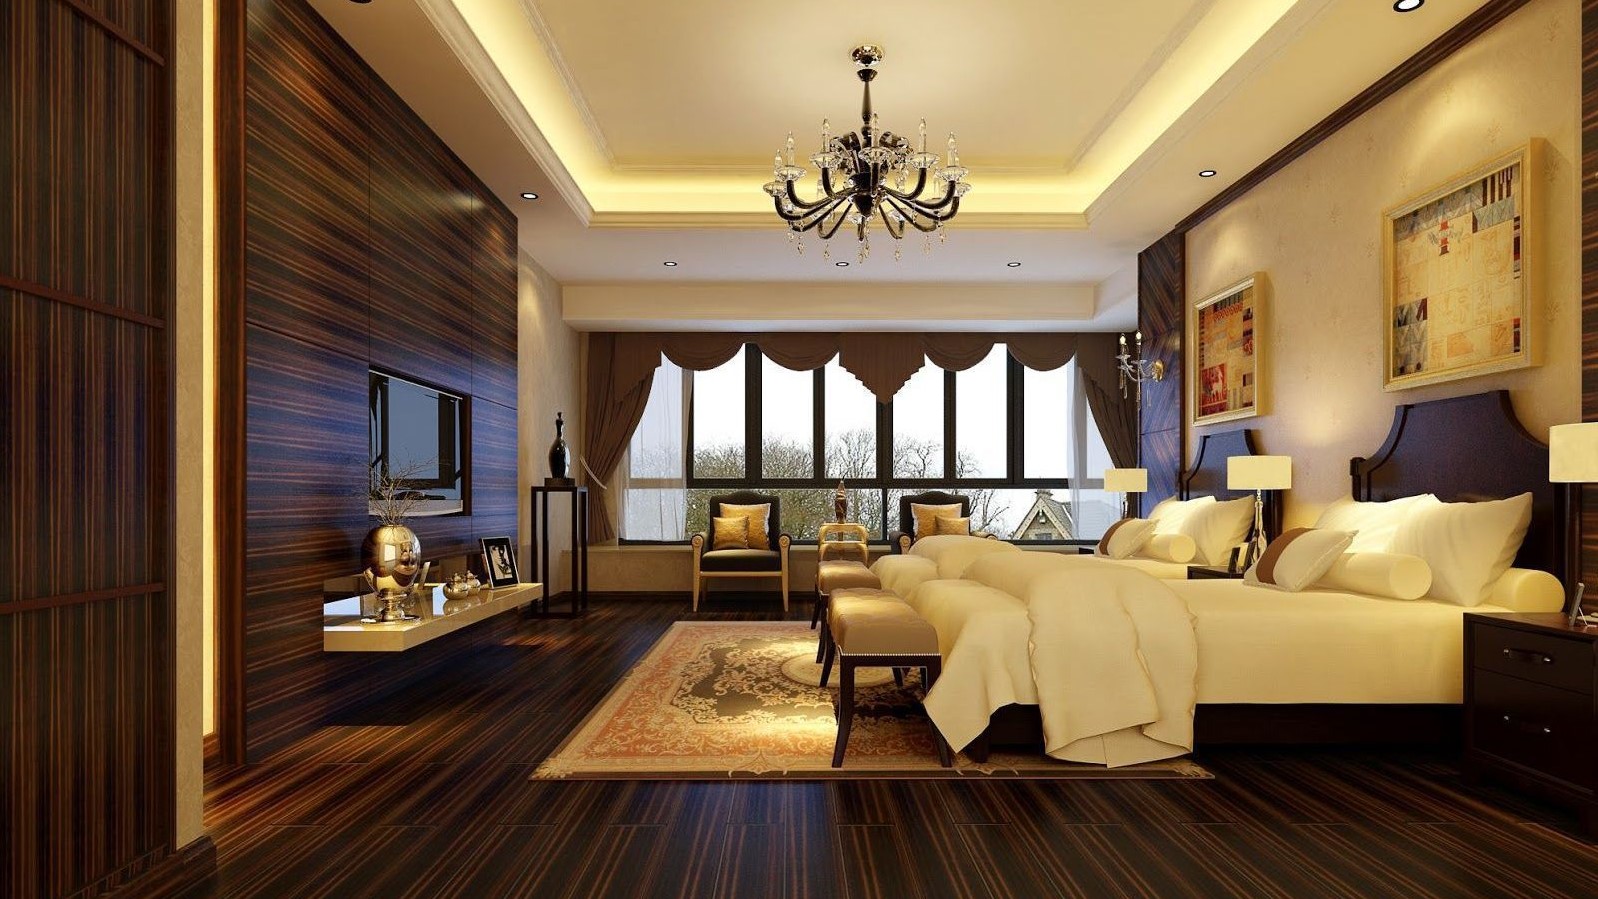 Trend thiết kế nội thất phòng ngủ khách sạn 3 sao luôn sáng tạo với những phong cách đa dạng để mang lại cho khách hàng những lựa chọn tốt nhất. Tất cả các phong cách đều nhằm tạo sự ấn tượng và sáng tạo, giúp bạn tận hưởng những khoảnh khắc vô cùng thư giãn và tiện nghi.